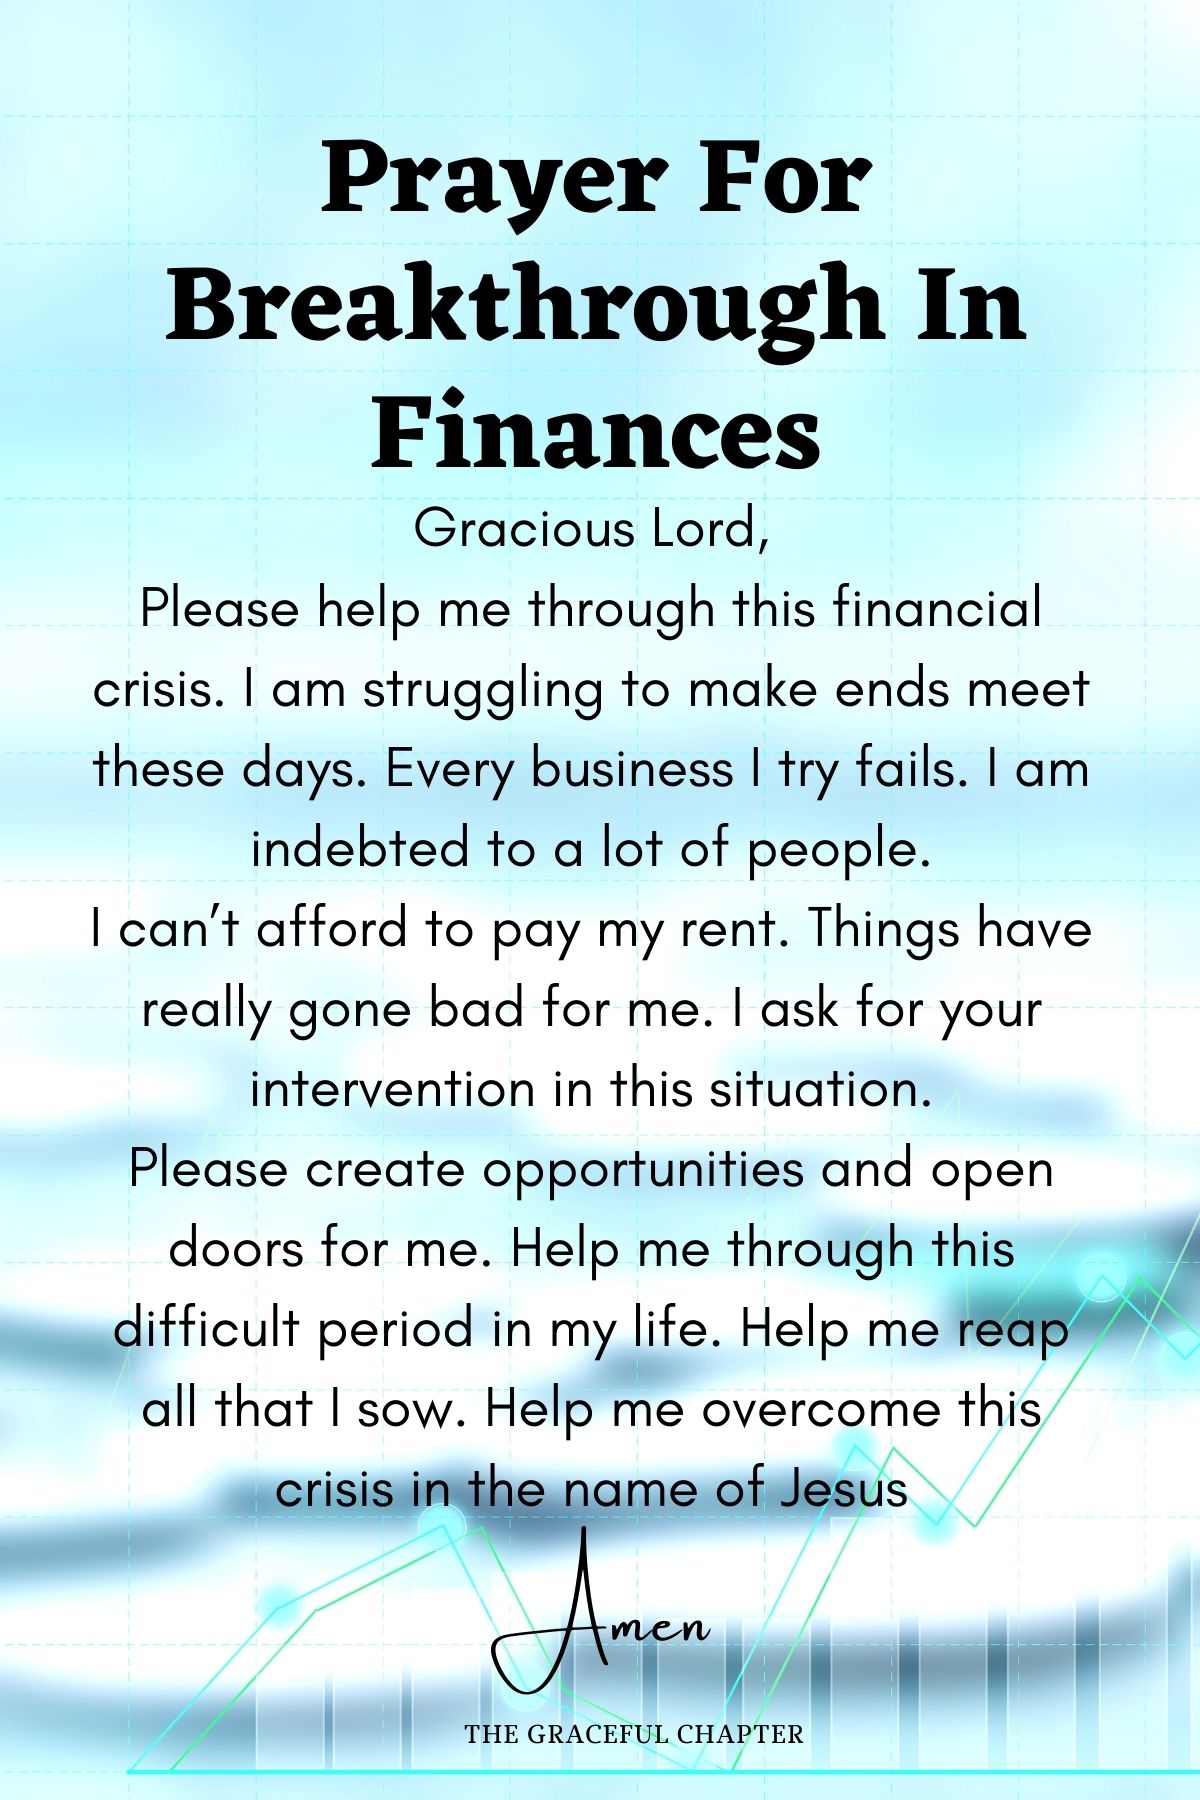 Prayer for breakthrough in finances